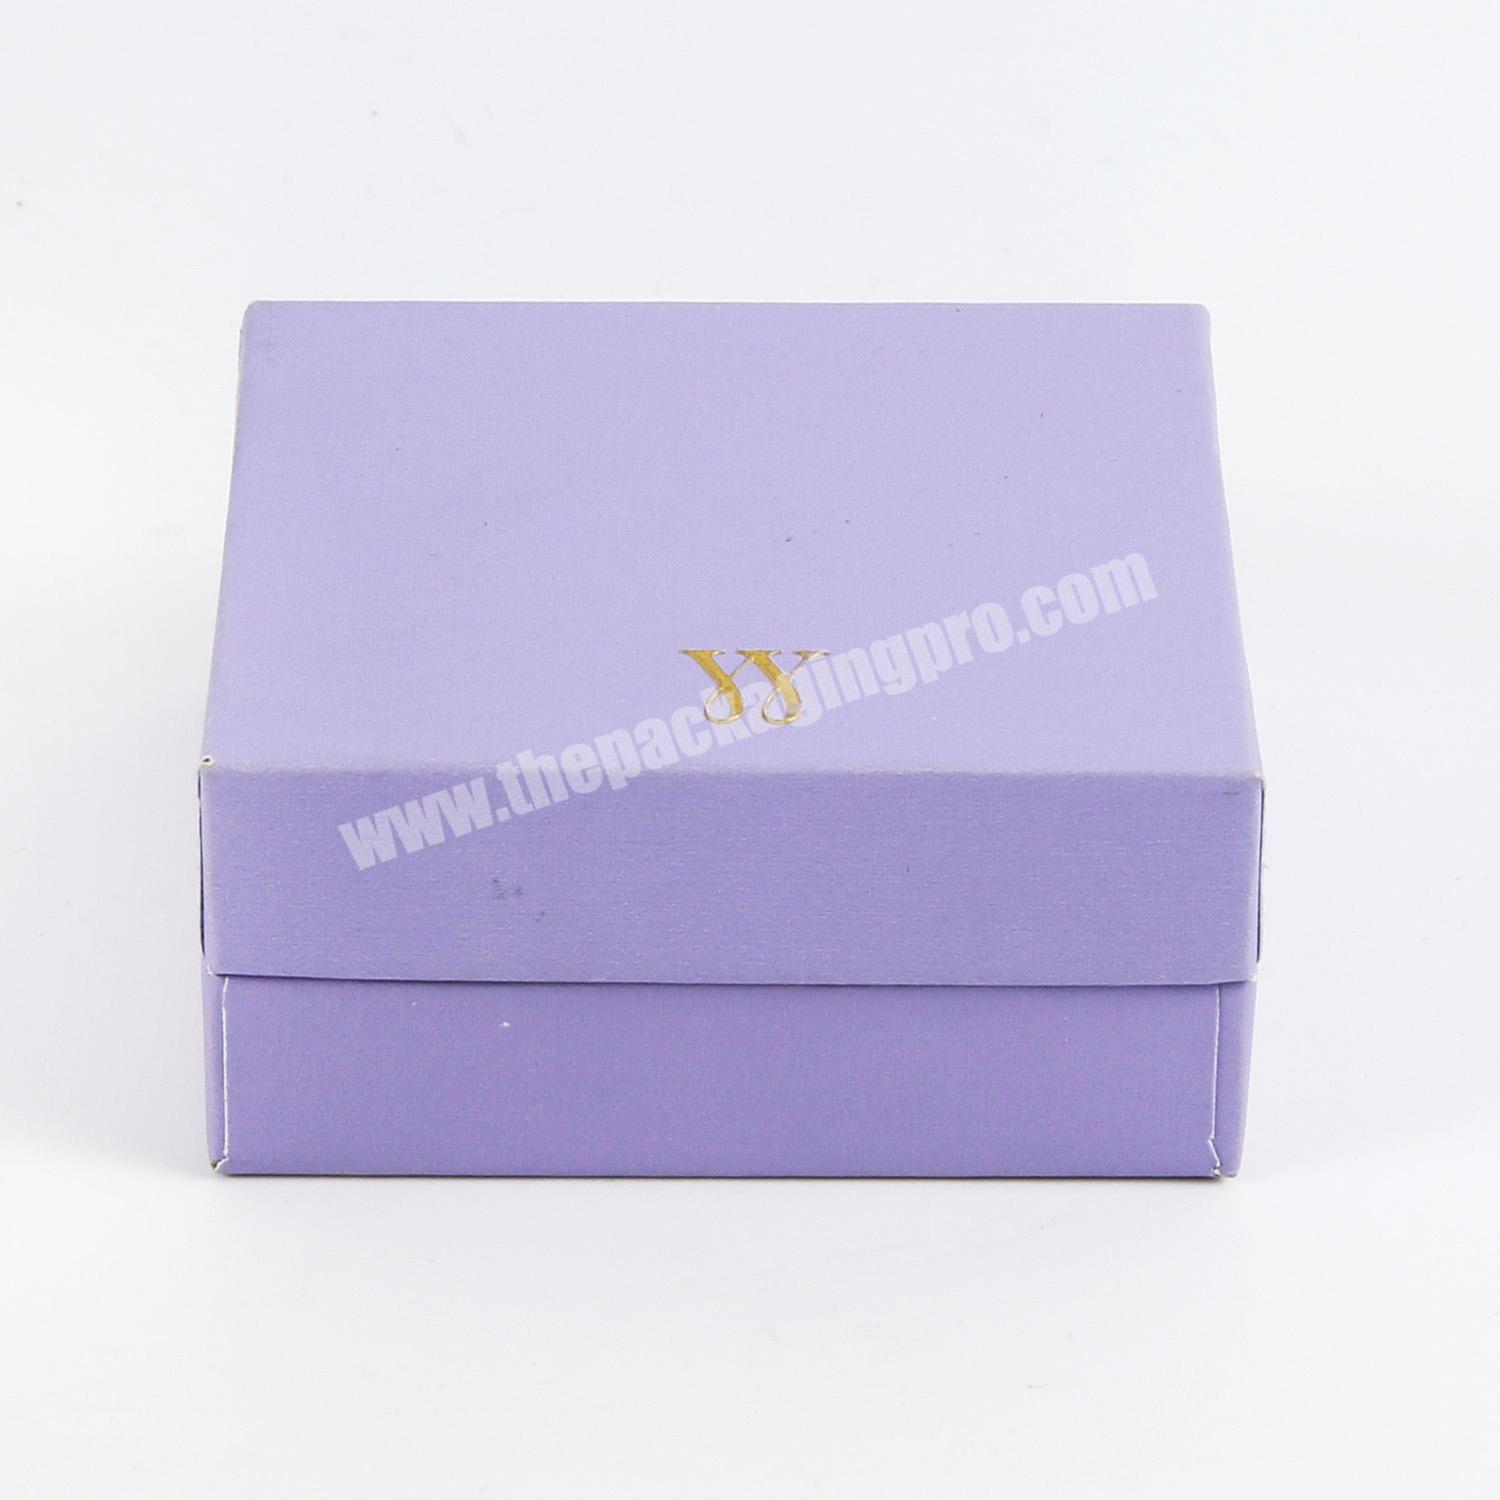 Wholesale Luxury cartridge packaging custom packaging gift box